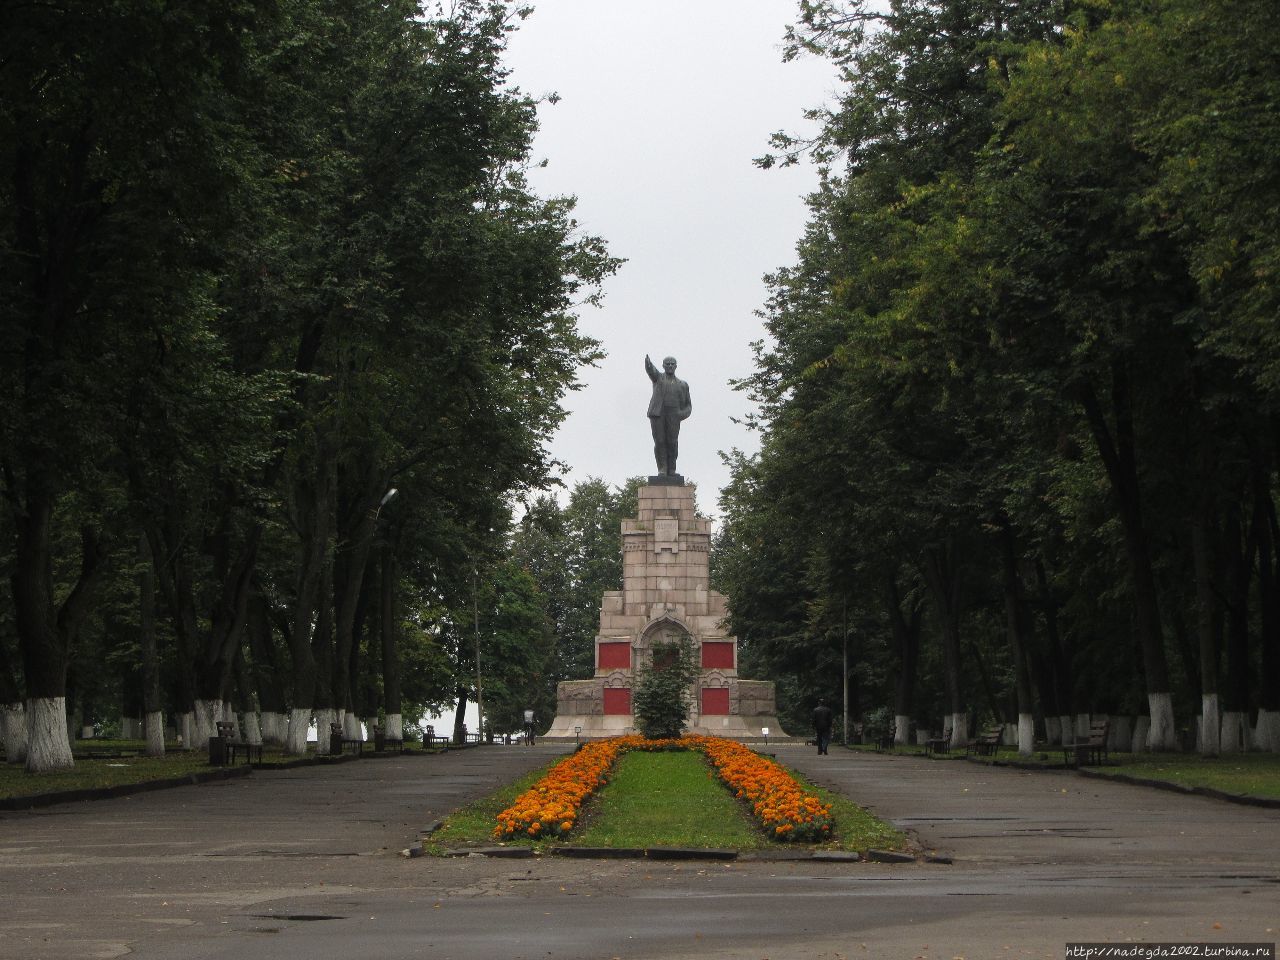 Ленин на Молочной горке Кострома, Россия